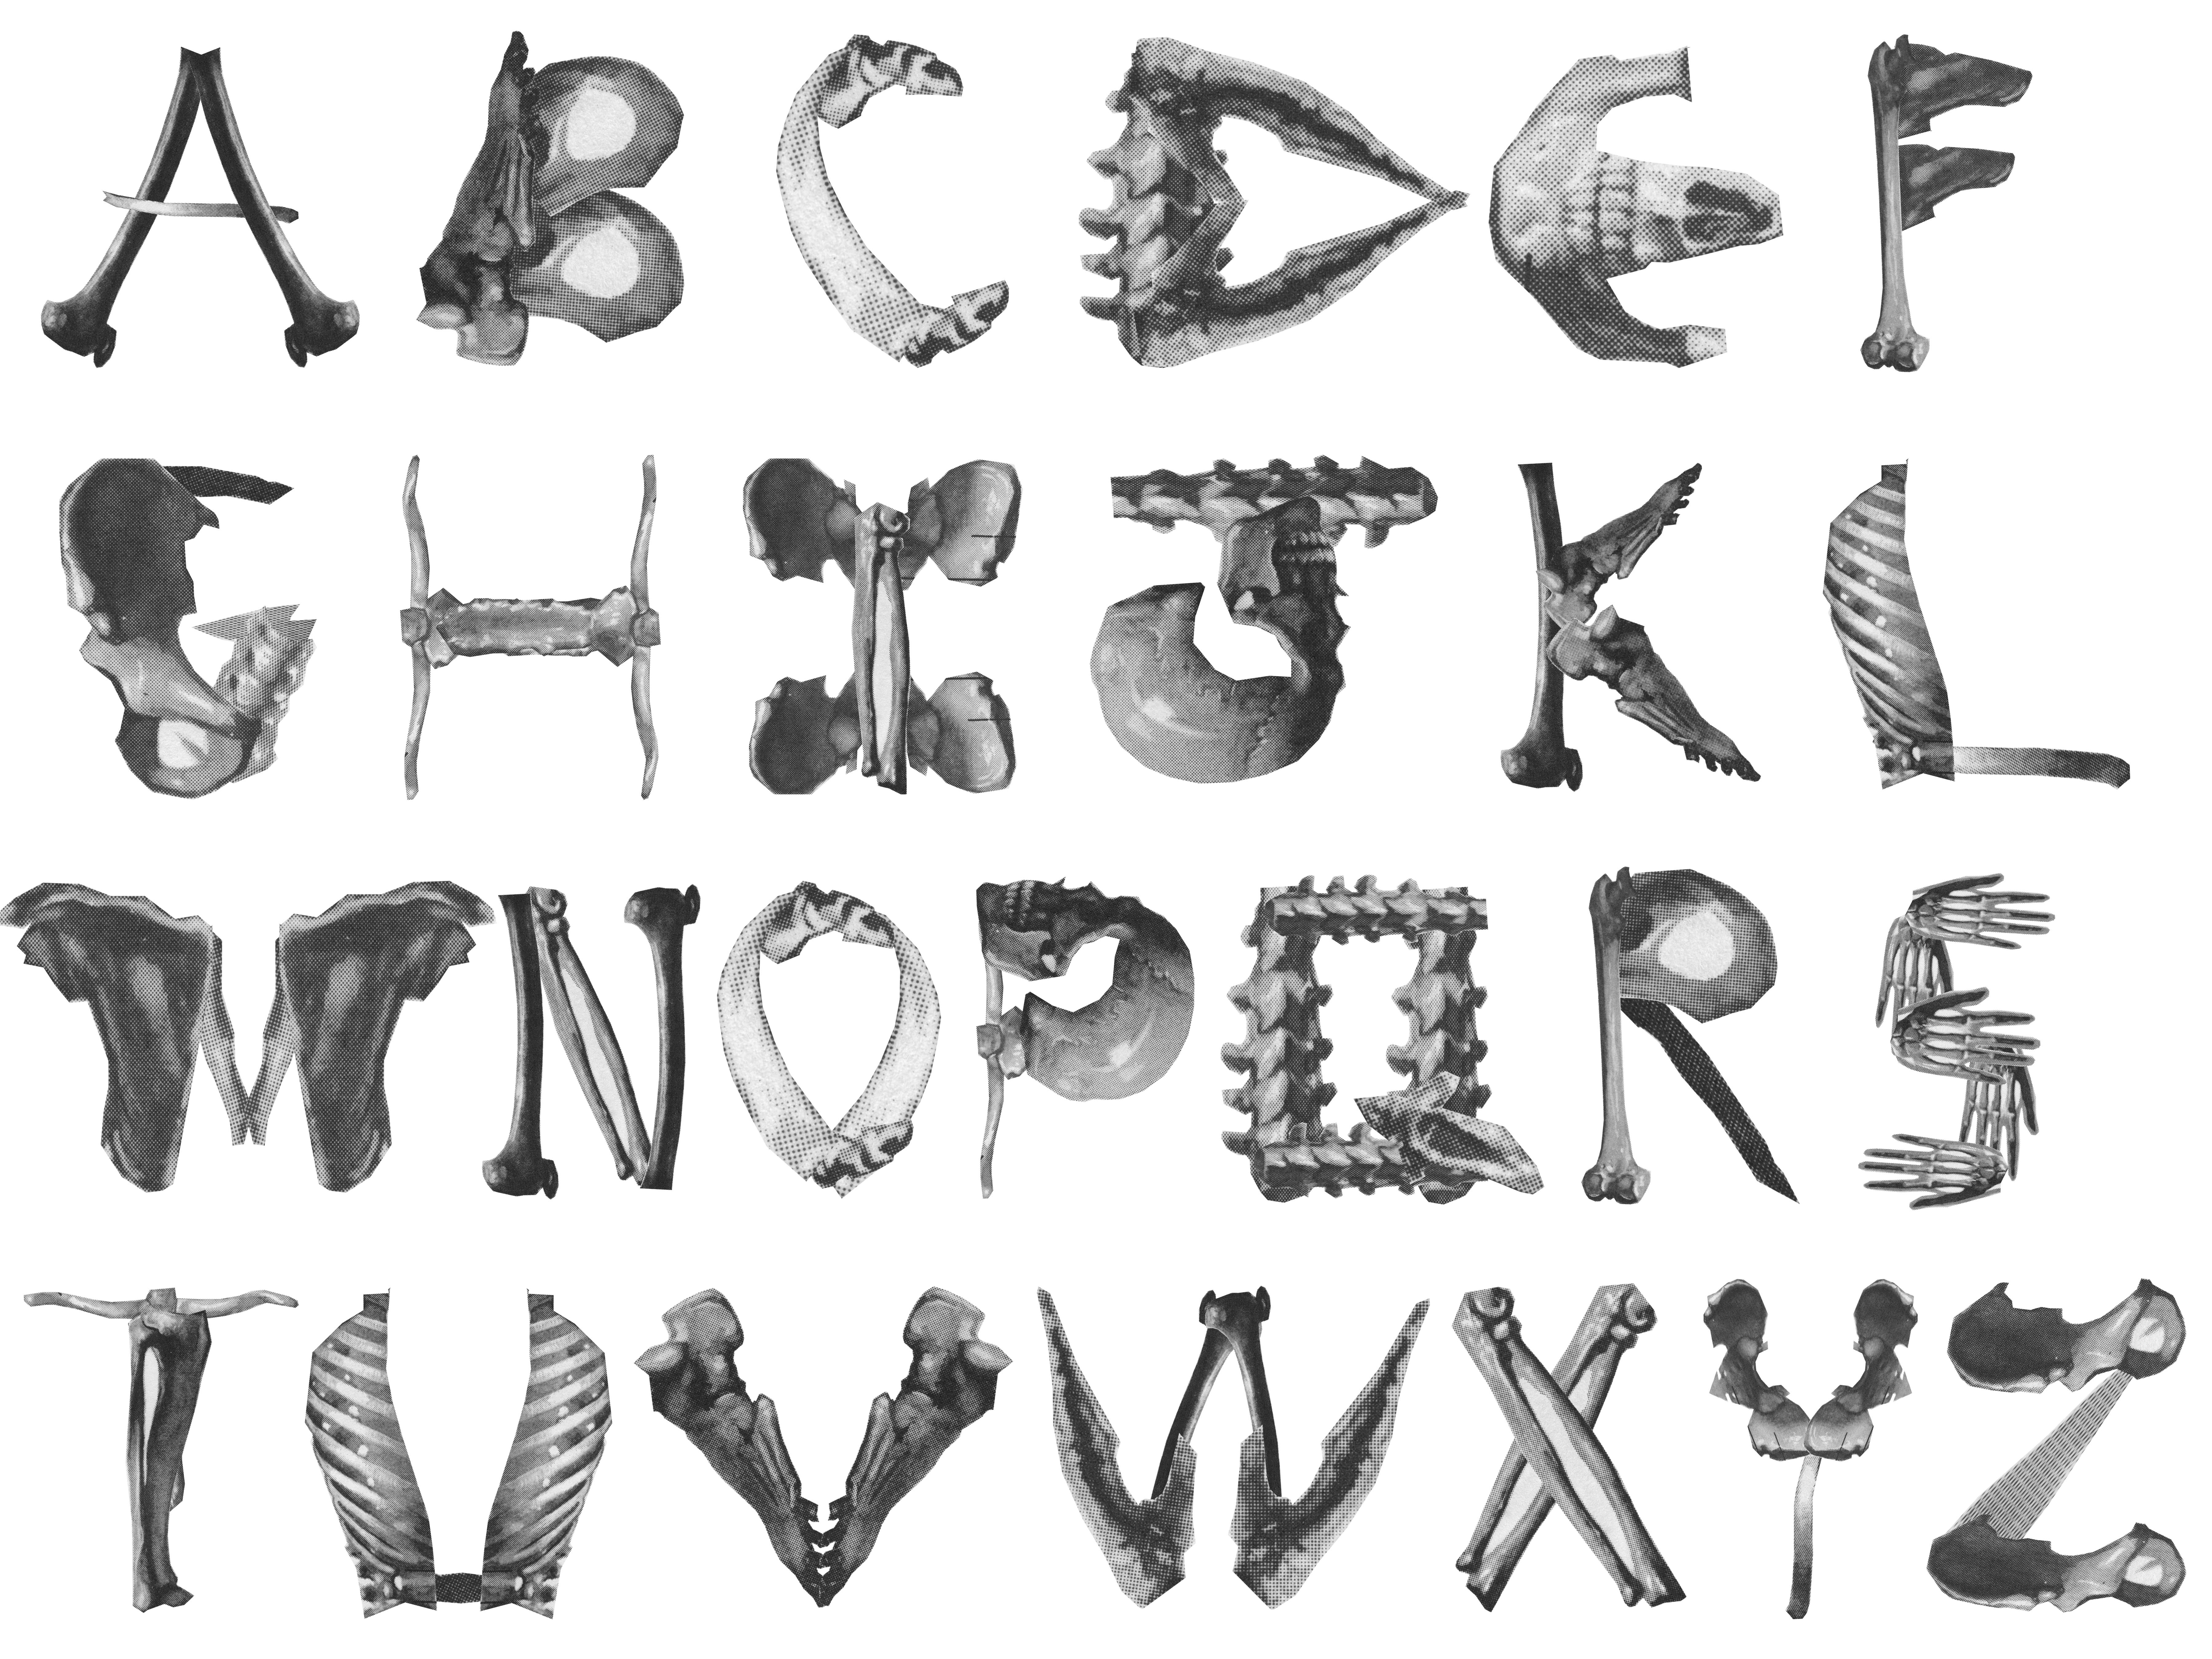 Skeleton Alphabet